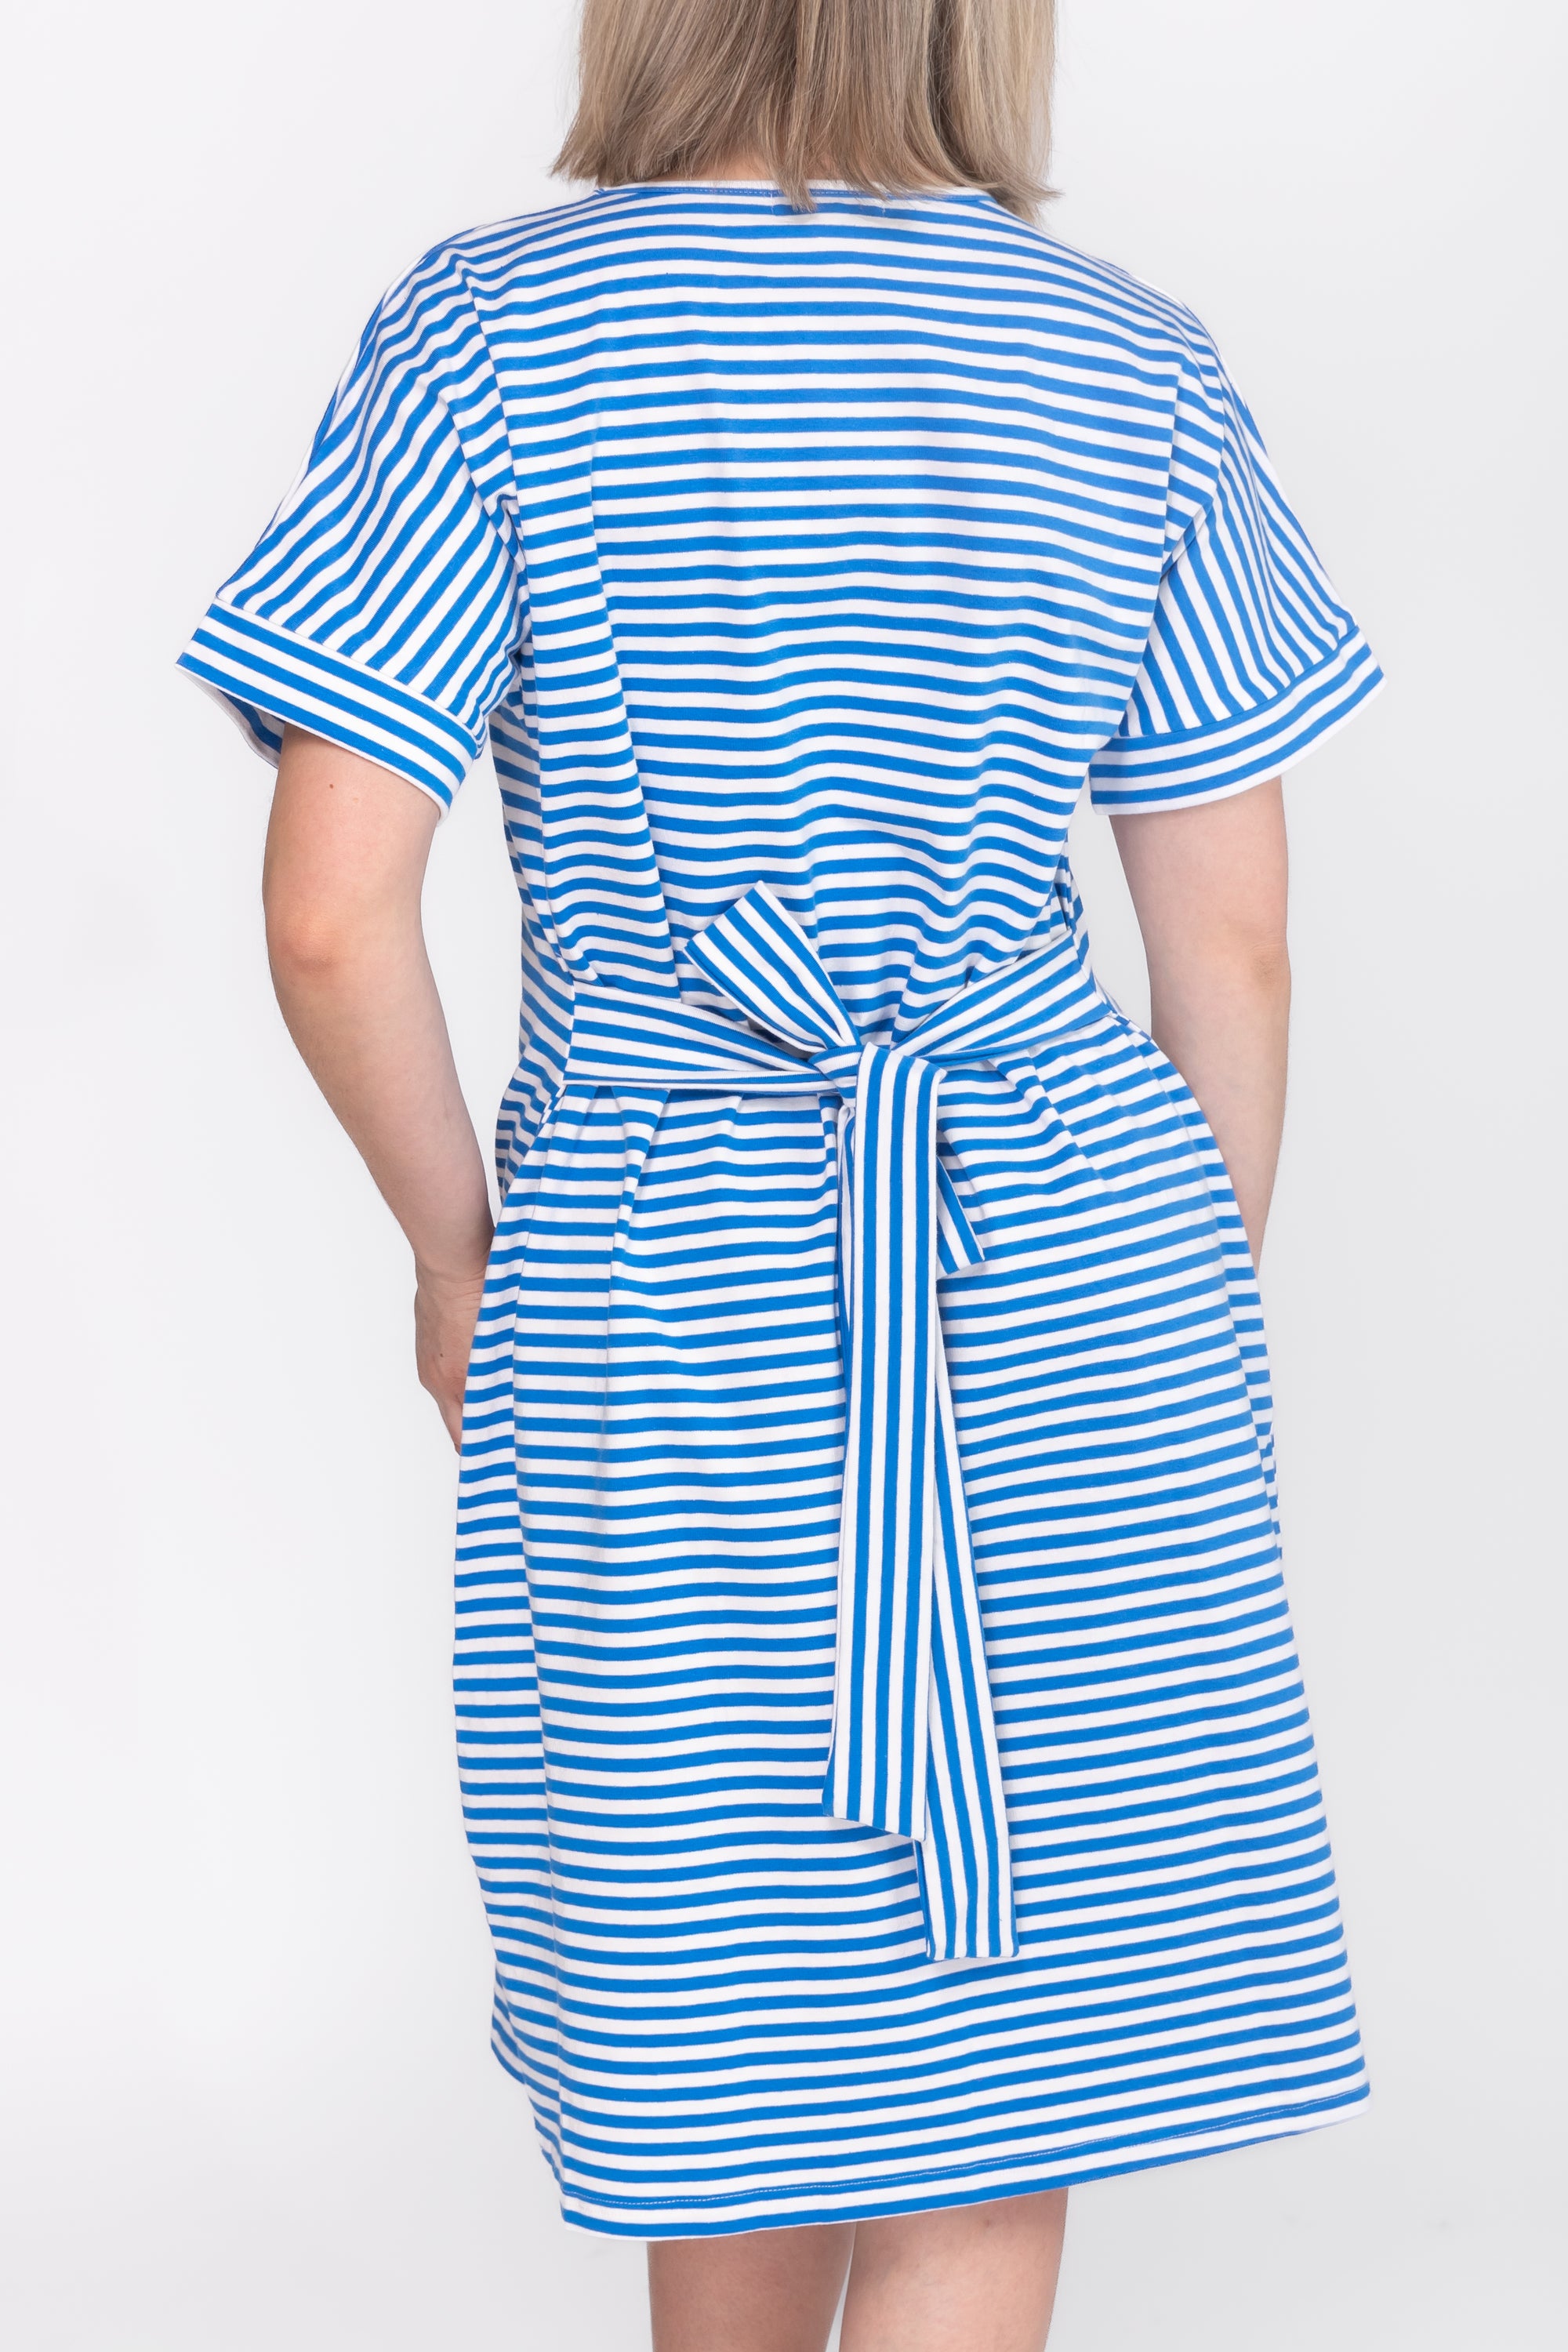 ELLA DRESS (BLUE/WHITE)